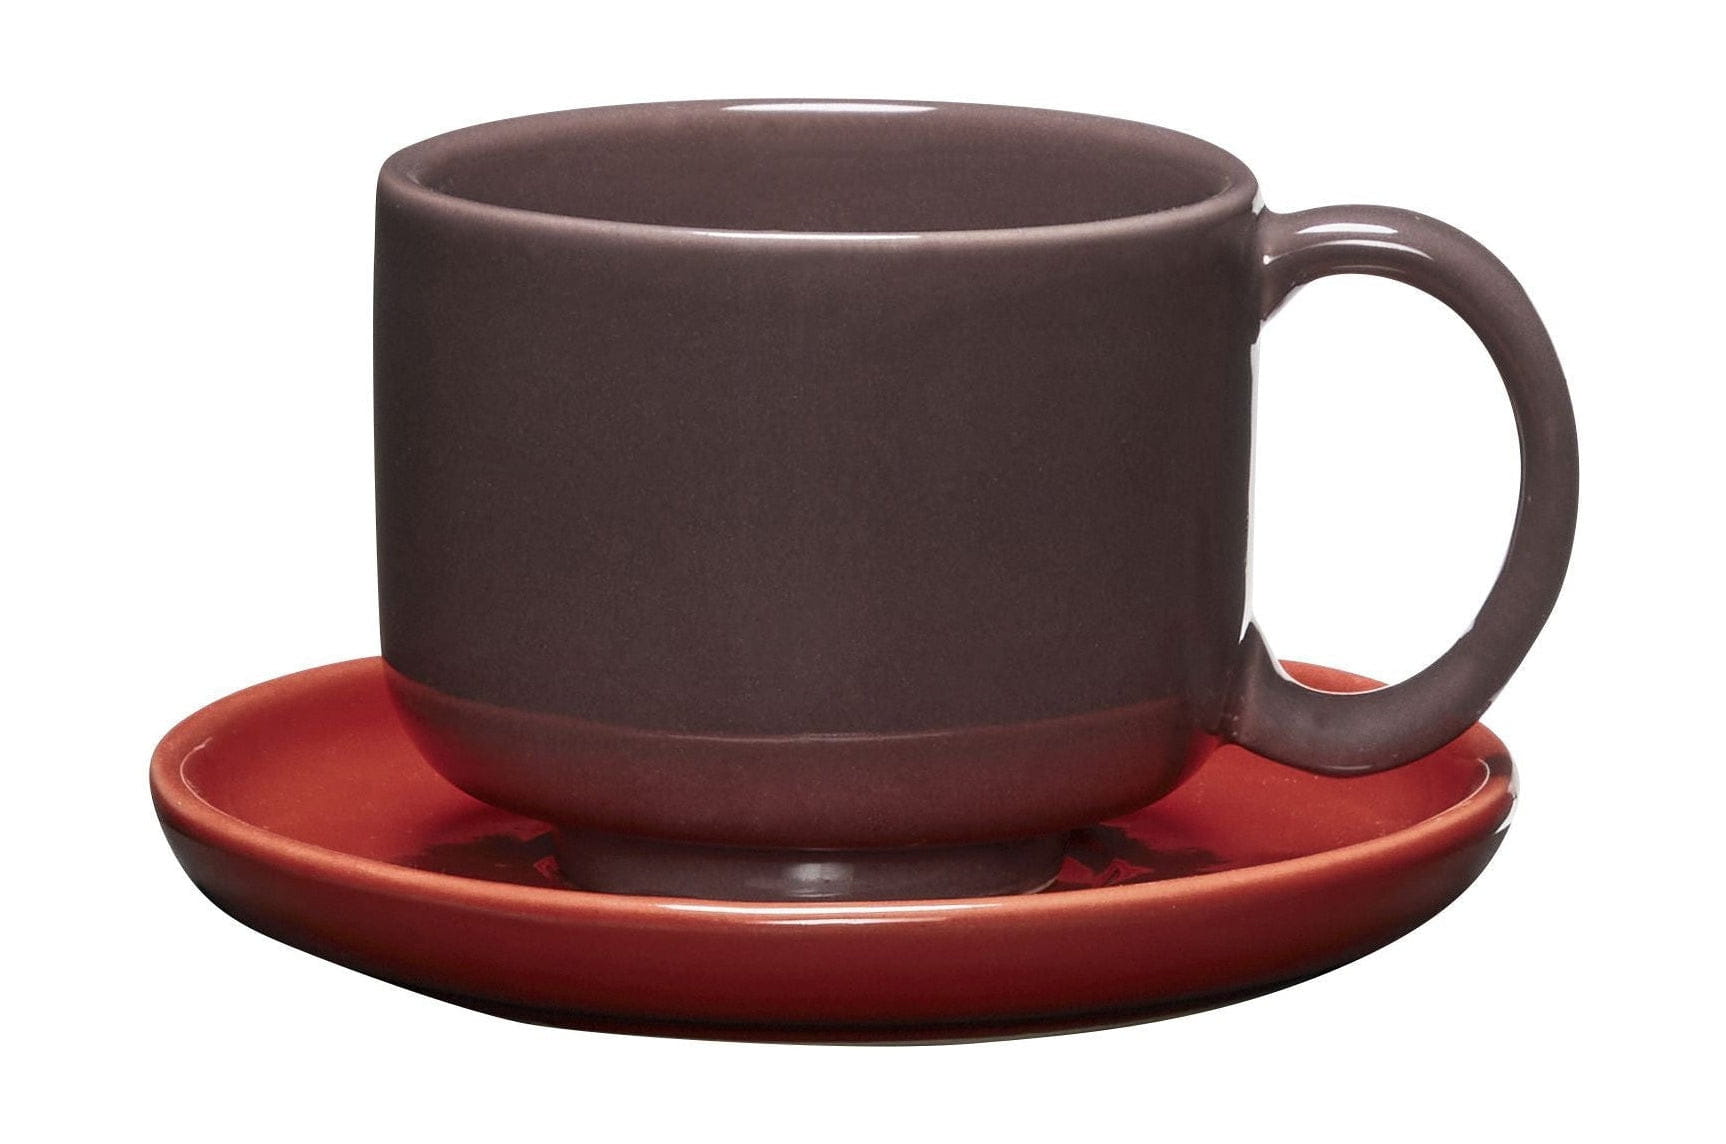 Hübsch Amare Mug & Saucer Set Of 2, Burgundy/Red